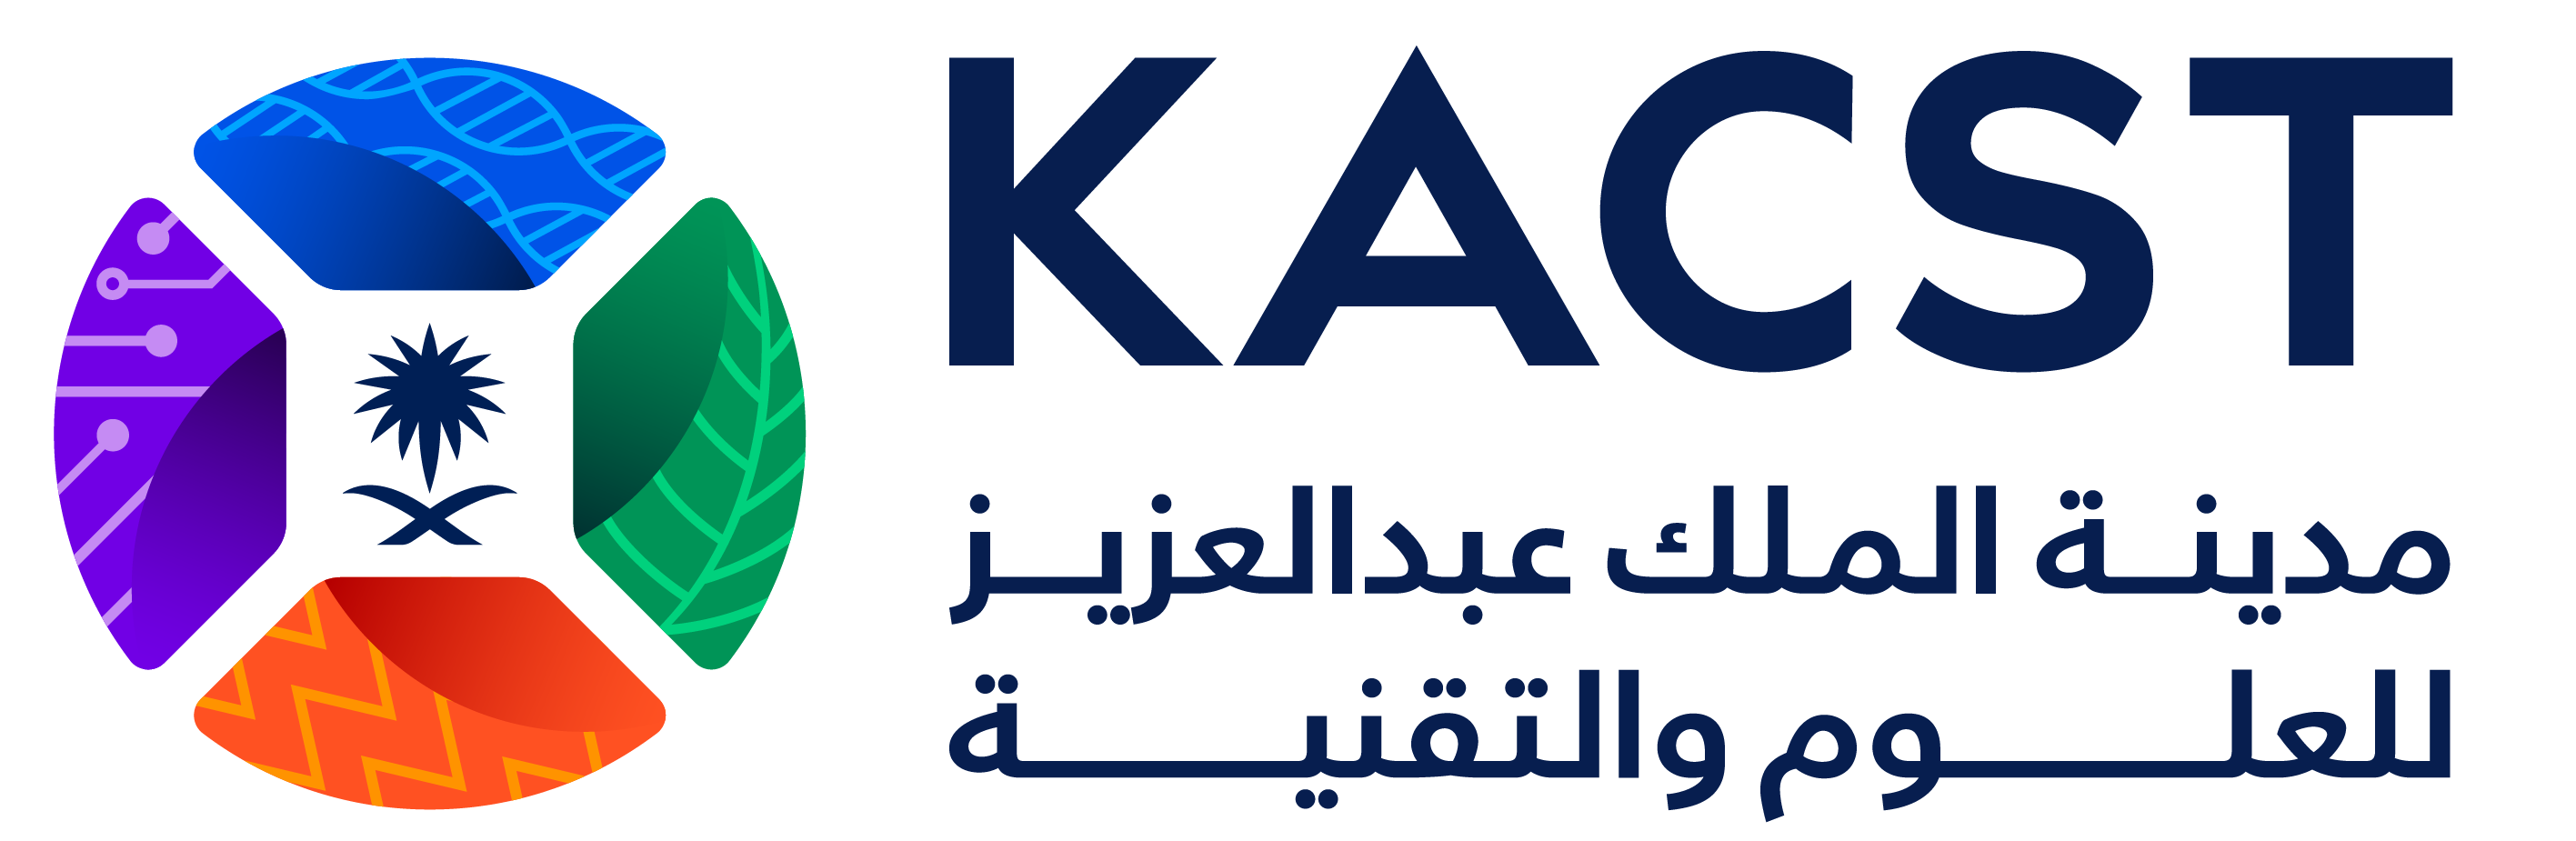 KACST_-_Logo.png